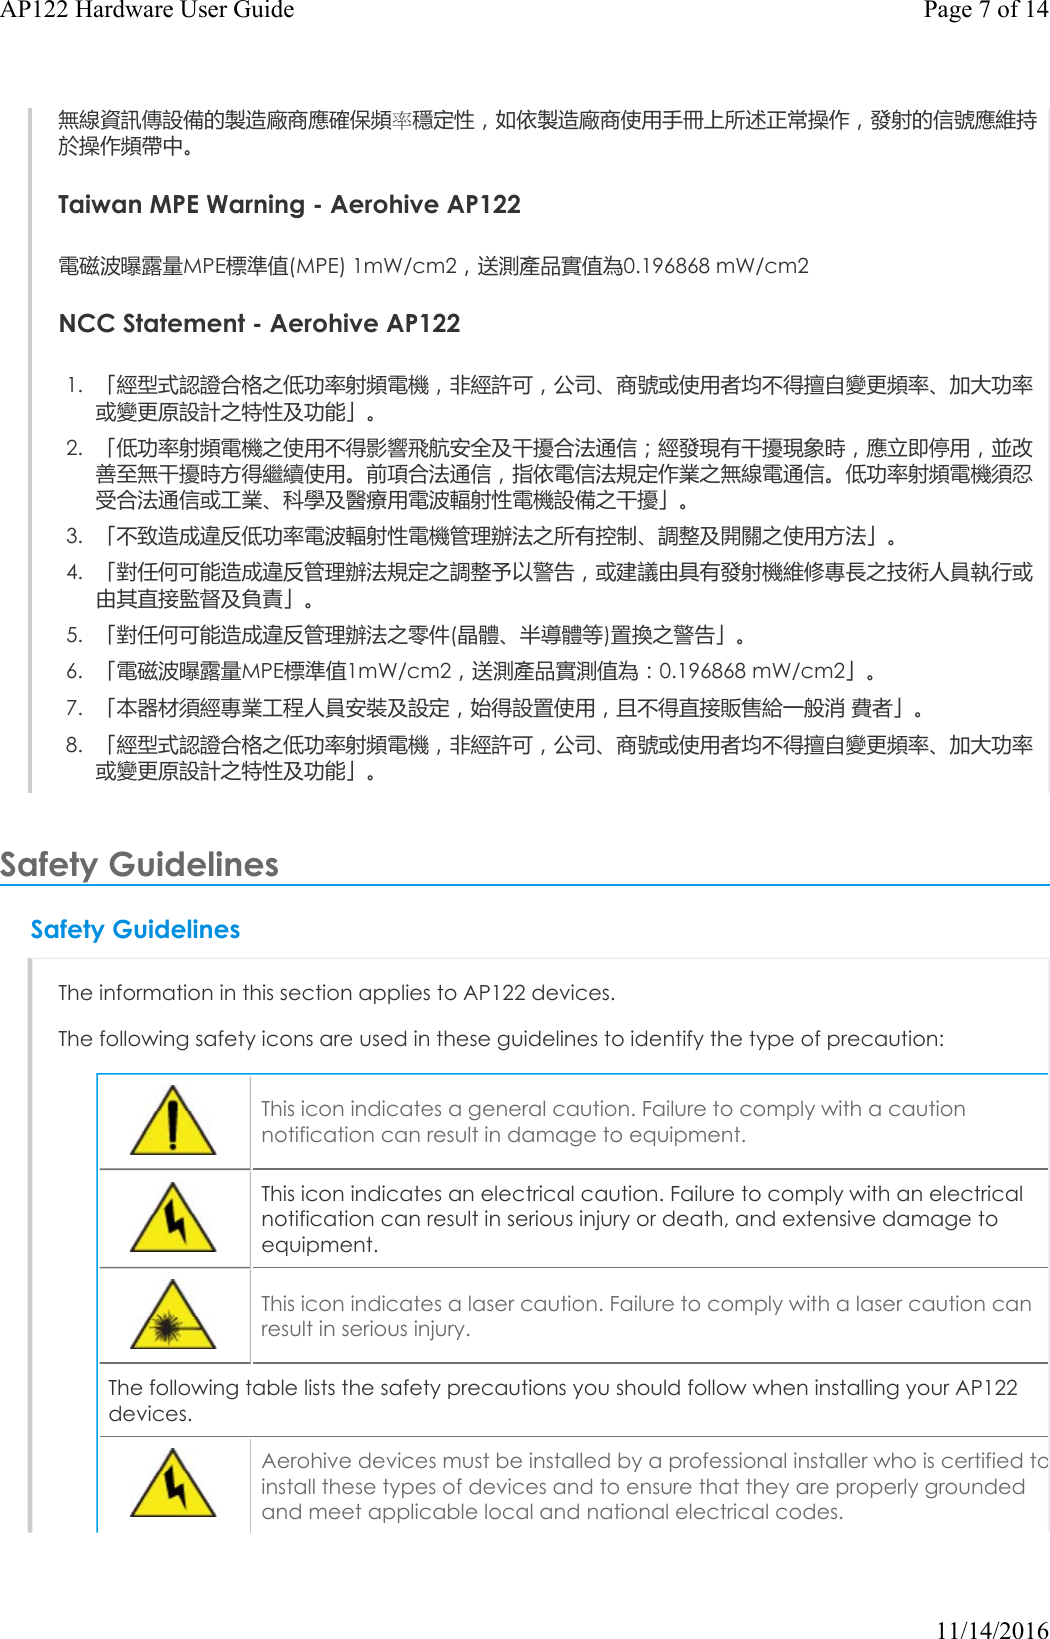 無線資訊傳設備的製造廠商應確保頻率穩定性，如依製造廠商使用手冊上所述正常操作，發射的信號應維持於操作頻帶中。Taiwan MPE Warning - Aerohive AP122電磁波曝露量MPE標準值(MPE) 1mW/cm2，送測產品實值為0.196868 mW/cm2NCCStatement - Aerohive AP1221. 「經型式認證合格之低功率射頻電機，非經許可，公司、商號或使用者均不得擅自變更頻率、加大功率或變更原設計之特性及功能」。2. 「低功率射頻電機之使用不得影響飛航安全及干擾合法通信；經發現有干擾現象時，應立即停用，並改善至無干擾時方得繼續使用。前項合法通信，指依電信法規定作業之無線電通信。低功率射頻電機須忍受合法通信或工業、科學及醫療用電波輻射性電機設備之干擾」。3. 「不致造成違反低功率電波輻射性電機管理辦法之所有控制、調整及開關之使用方法」。4. 「對任何可能造成違反管理辦法規定之調整予以警告，或建議由具有發射機維修專長之技術人員執行或由其直接監督及負責」。5. 「對任何可能造成違反管理辦法之零件(晶體、半導體等)置換之警告」。6. 「電磁波曝露量MPE標準值1mW/cm2，送測產品實測值為：0.196868 mW/cm2」。7. 「本器材須經專業工程人員安裝及設定，始得設置使用，且不得直接販售給一般消 費者」。8. 「經型式認證合格之低功率射頻電機，非經許可，公司、商號或使用者均不得擅自變更頻率、加大功率或變更原設計之特性及功能」。Safety Guidelines Safety GuidelinesThe information in this section applies to AP122 devices.The following safety icons are used in these guidelines to identify the type of precaution:This icon indicates a general caution. Failure to comply with a caution notification can result in damage to equipment.This icon indicates an electrical caution. Failure to comply with an electrical notification can result in serious injury or death, and extensive damage to equipment.This icon indicates a laser caution. Failure to comply with a laser caution can result in serious injury.The following table lists the safety precautions you should follow when installing your AP122 devices.Aerohive devices must be installed by a professional installer who is certified toinstall these types of devices and to ensure that they are properly grounded and meet applicable local and national electrical codes.Page 7 of 14AP122 Hardware User Guide11/14/2016